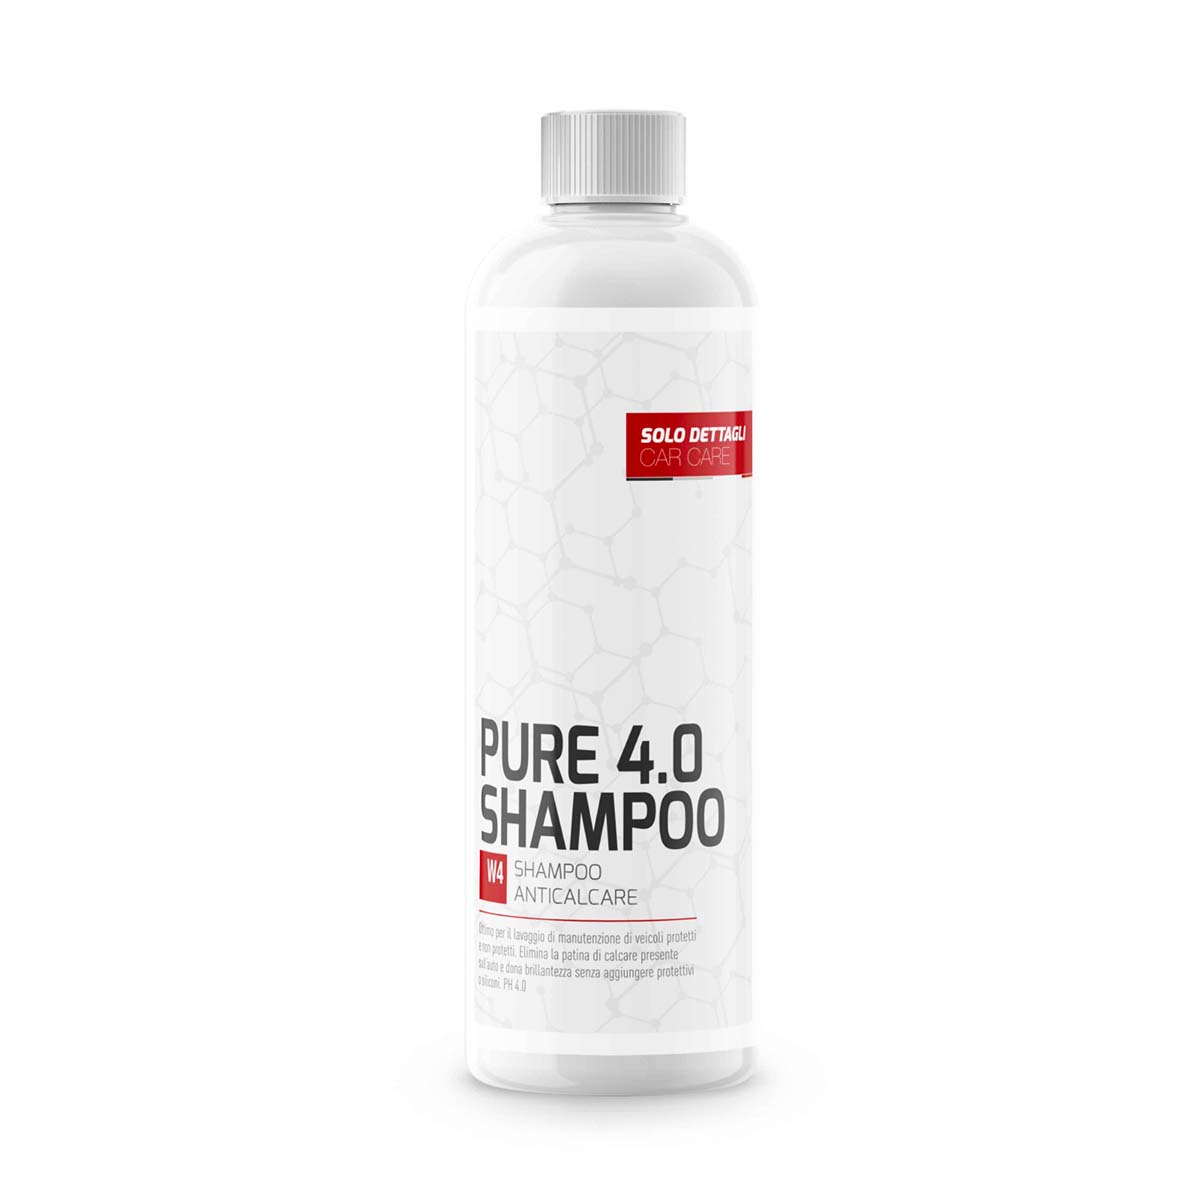 pure 4.0 shampoo anticalcare 500ml